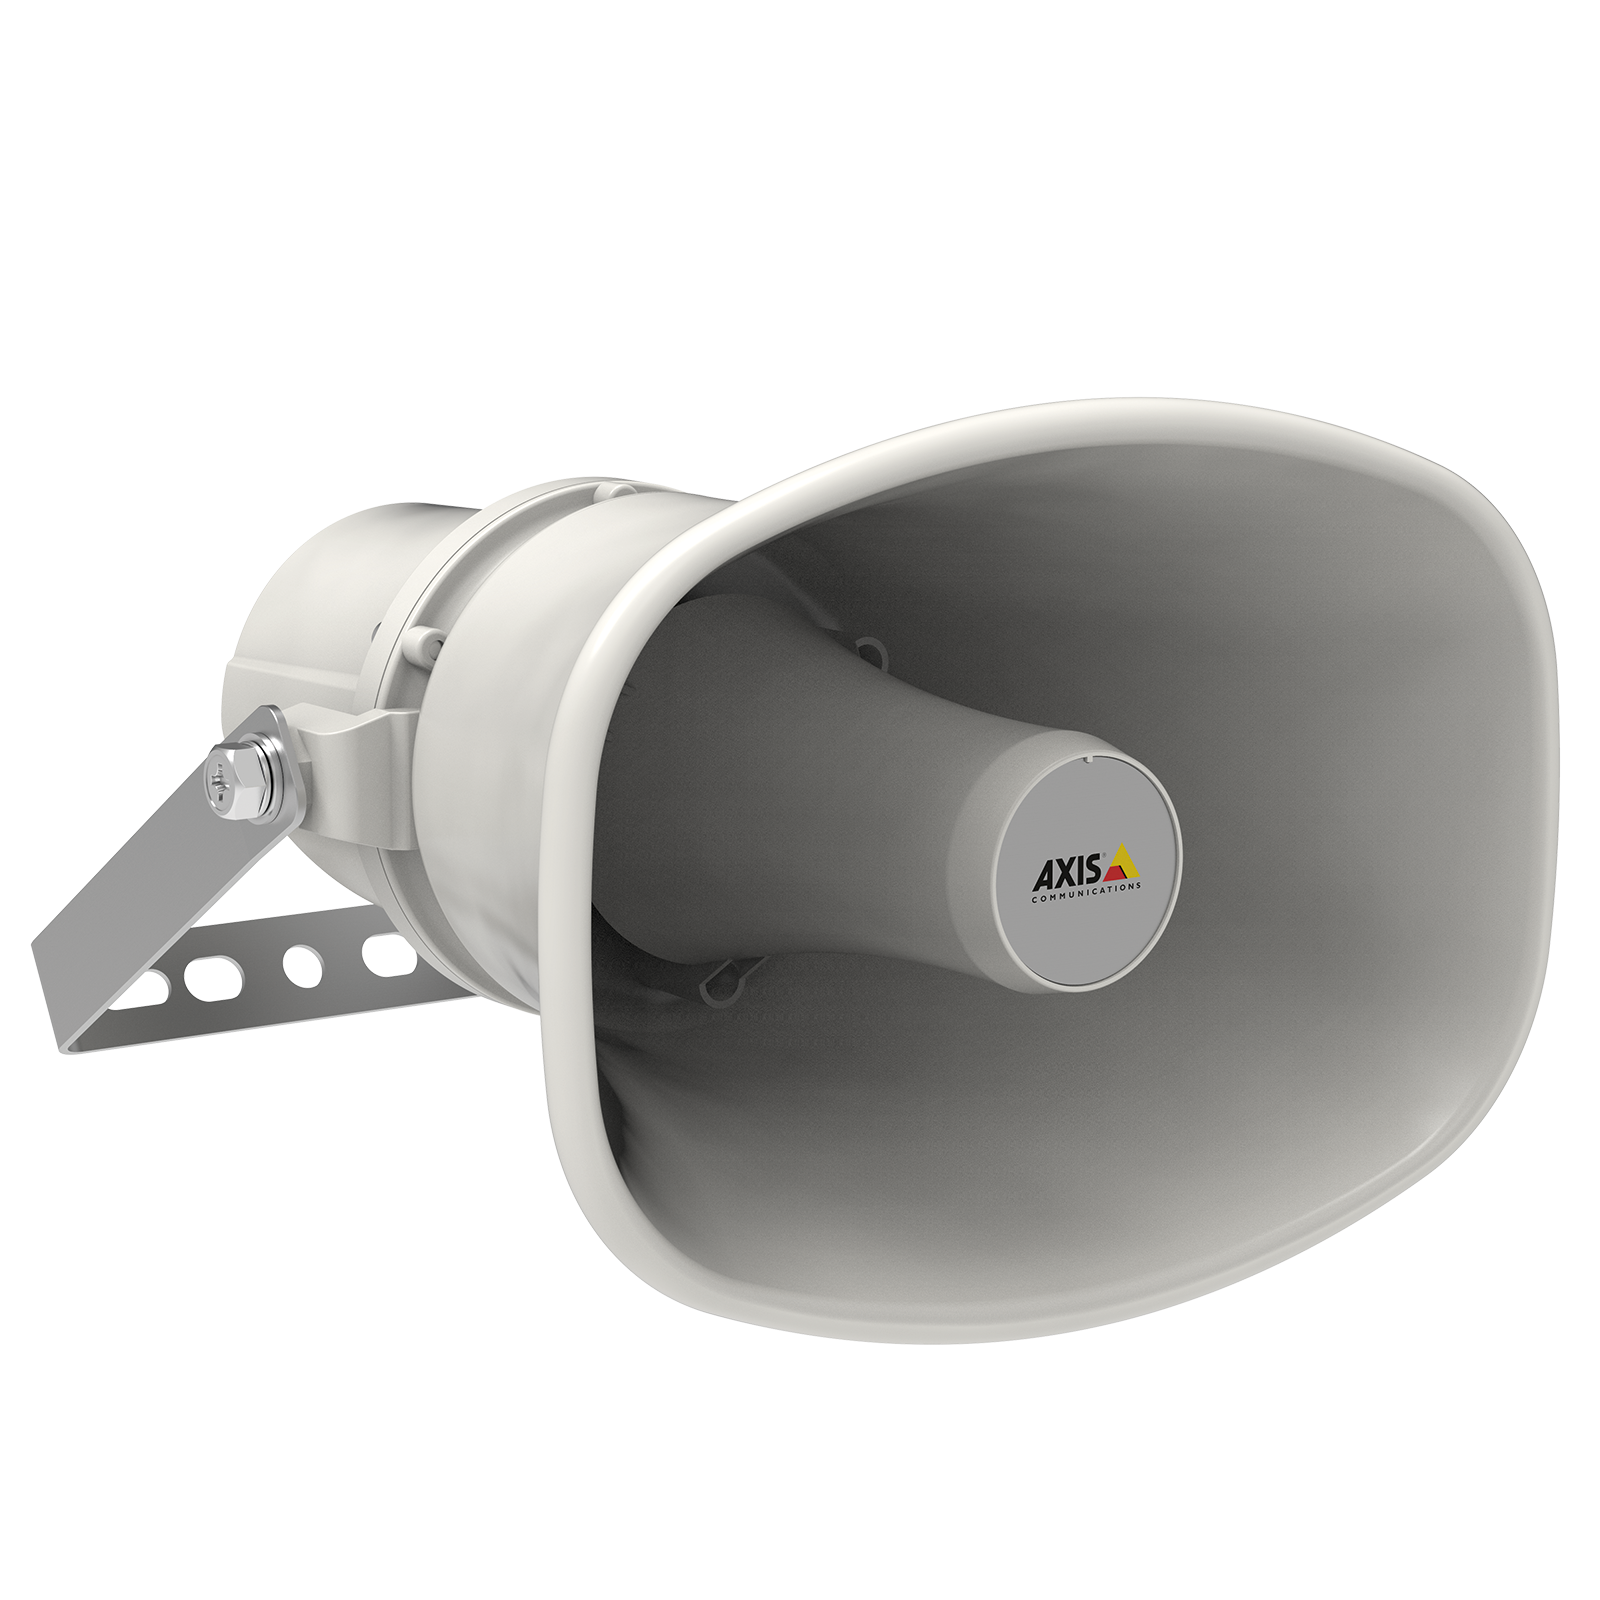 Network Horn Speaker